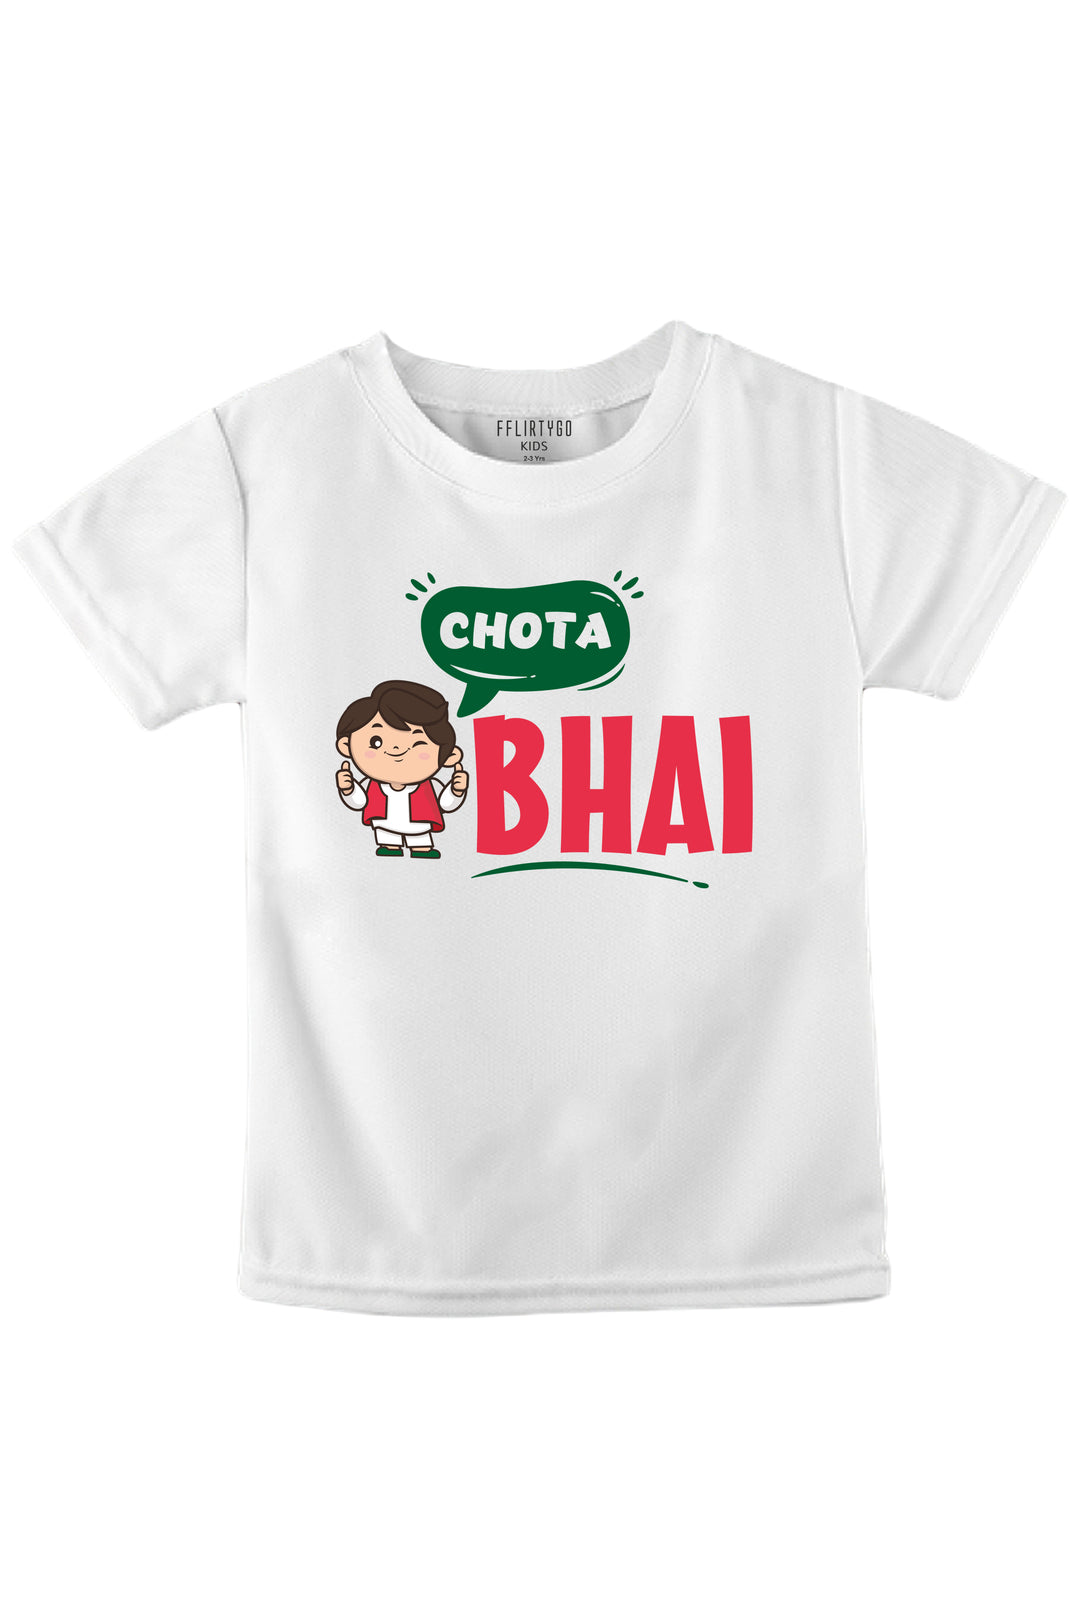 Chota Bhai